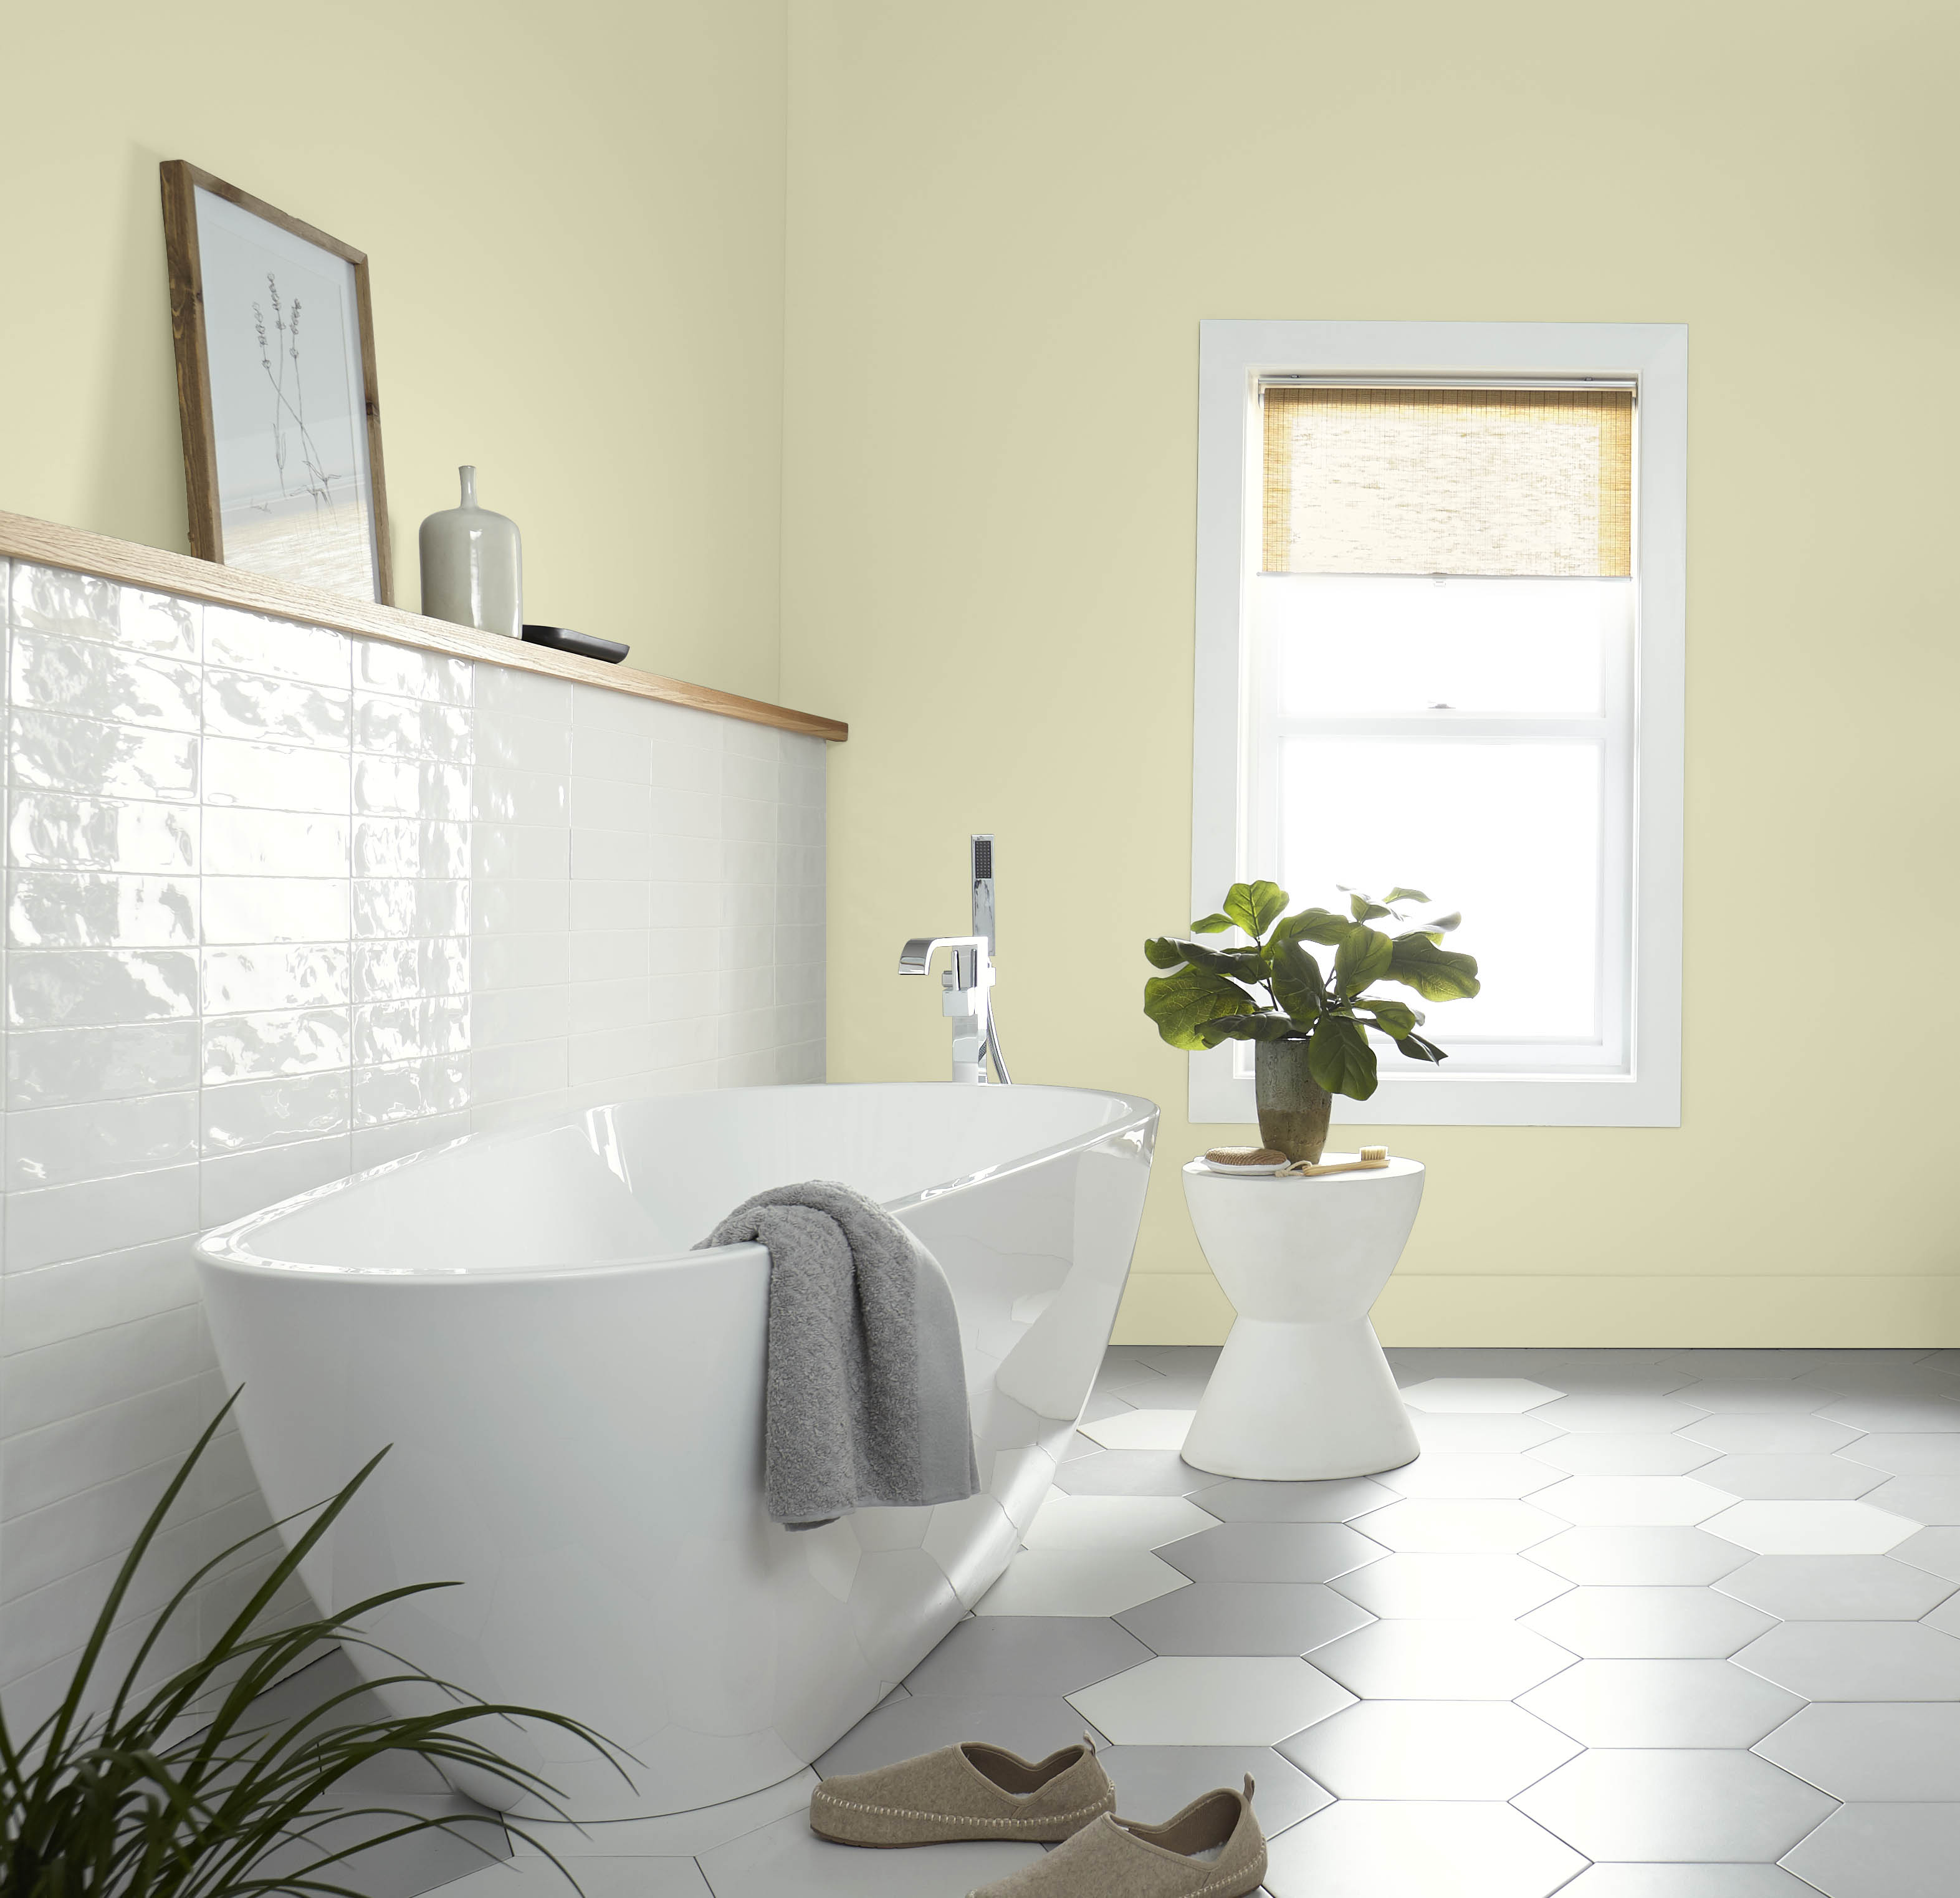 Une salle de bain lumineuse aux murs et plinthes dans la couleur Hybride, avec baignoire et petite table 